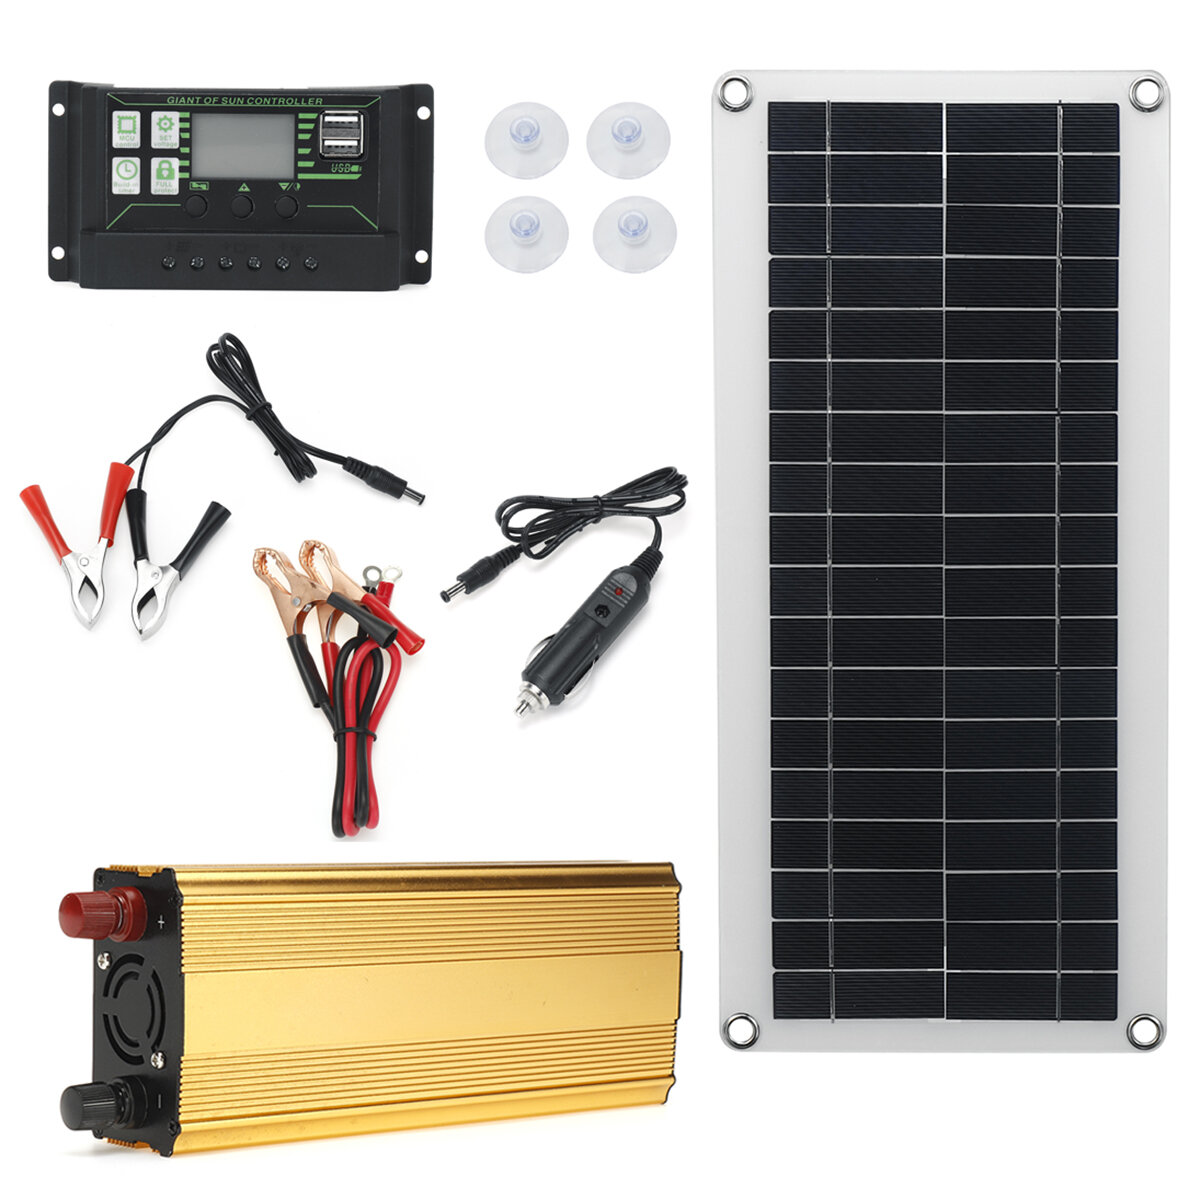 4In1 Waterdicht Zonnepaneel Solar Power Kit W / 2000W Omvormer 30W Zonnepaneel Met Soar Laadregelaar